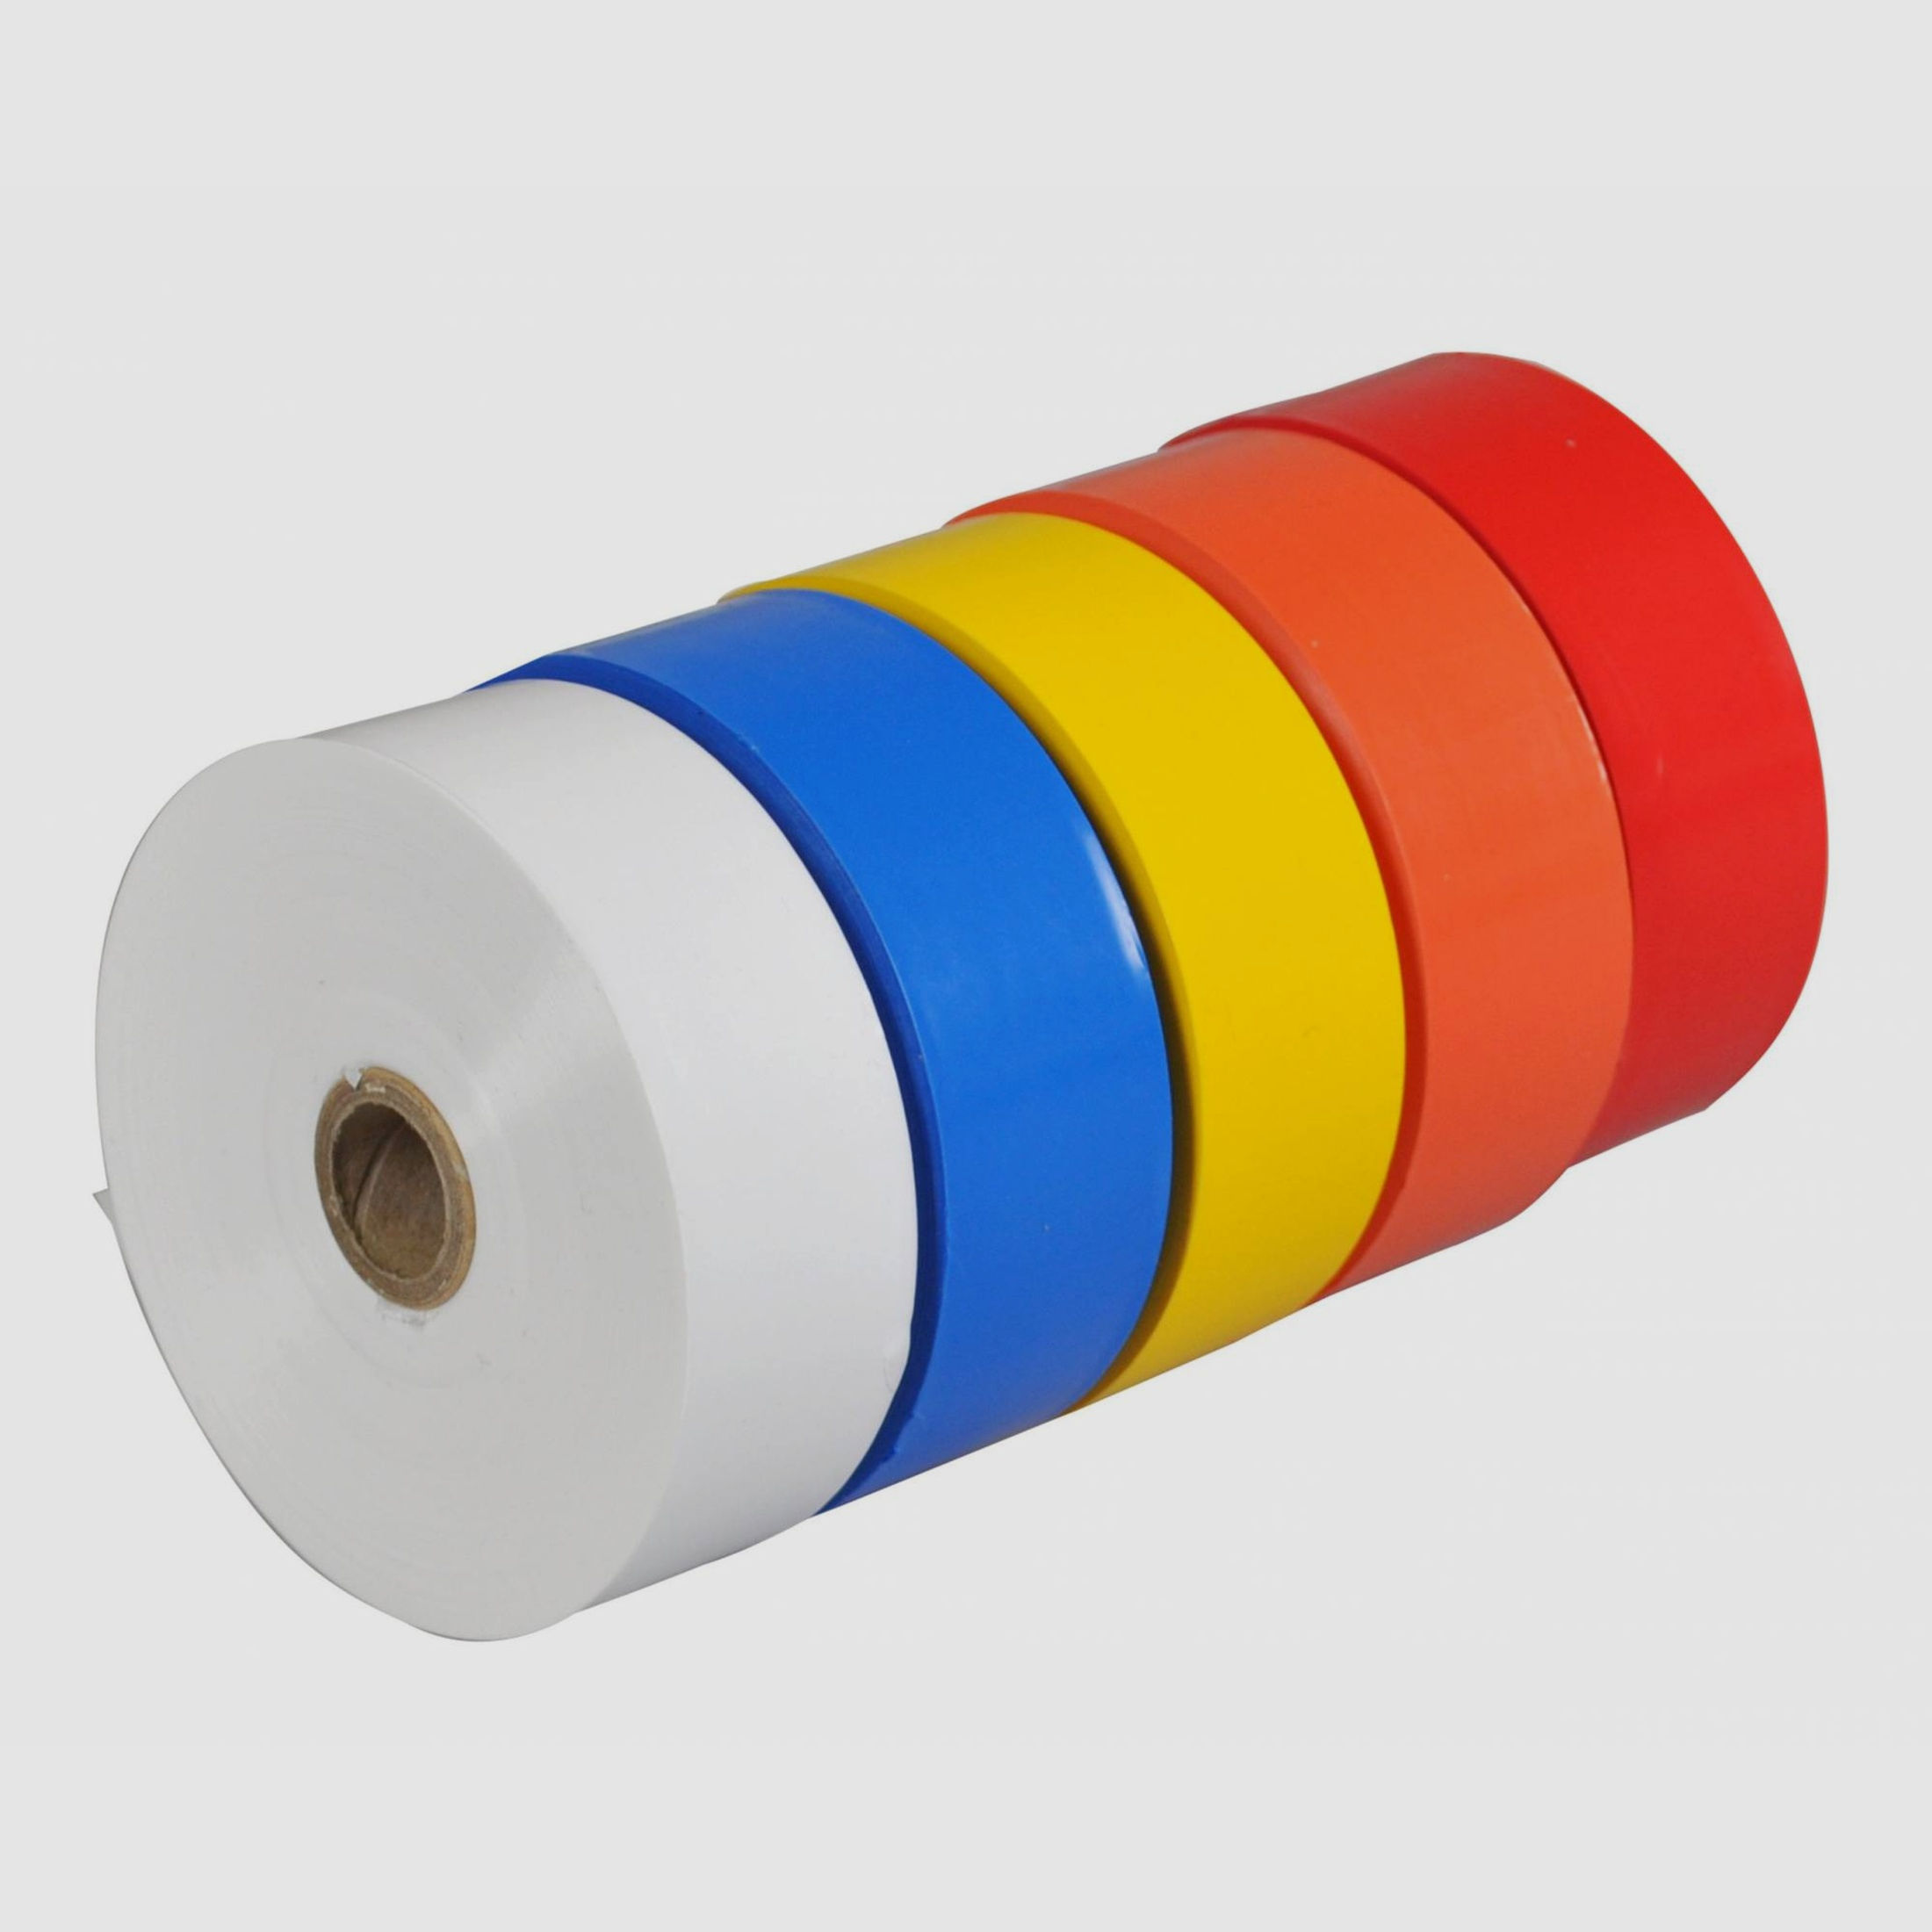 Markierungsband für Nachsuchen aus Polyethylen